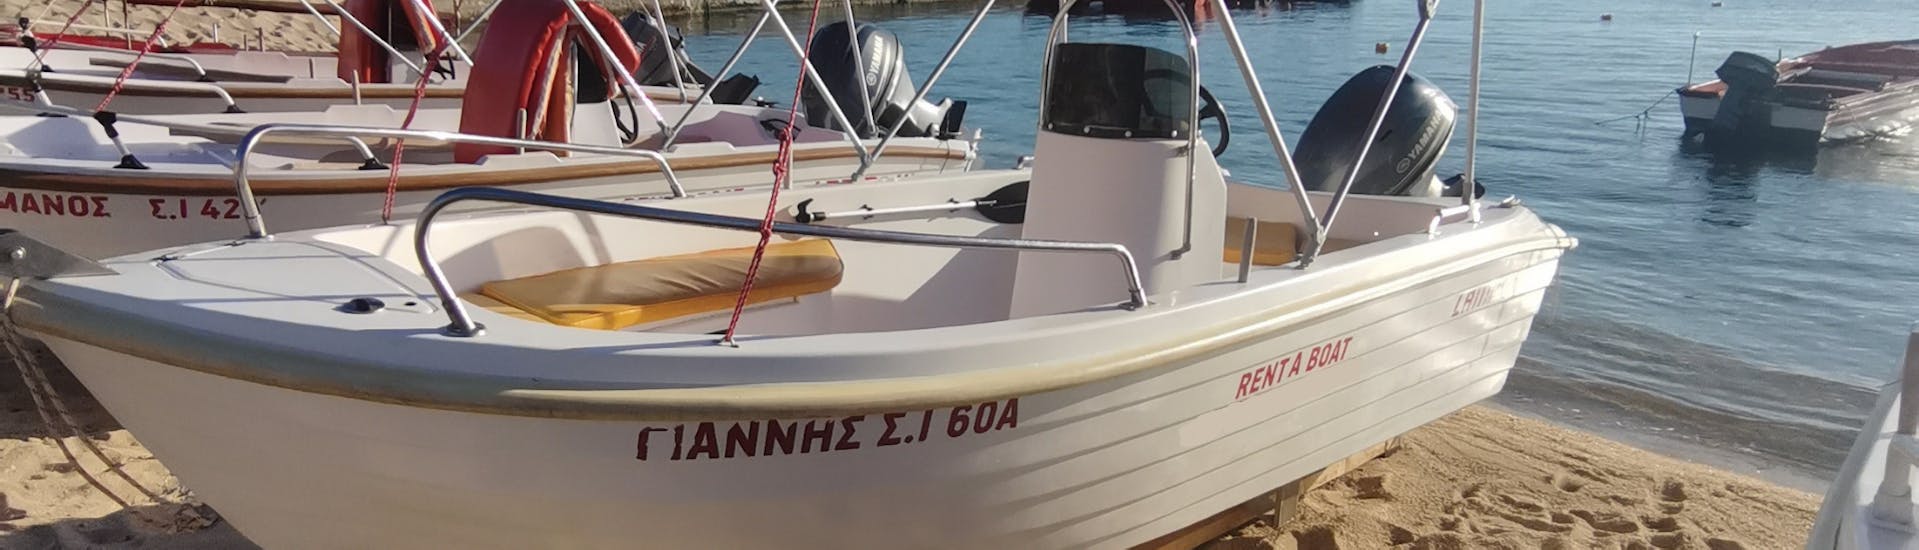 El barco está en la playa durante el Alquiler de Barcos en Ouranoupoli (hasta 5 personas) sin Licencia con Rent a Boat Lampou.